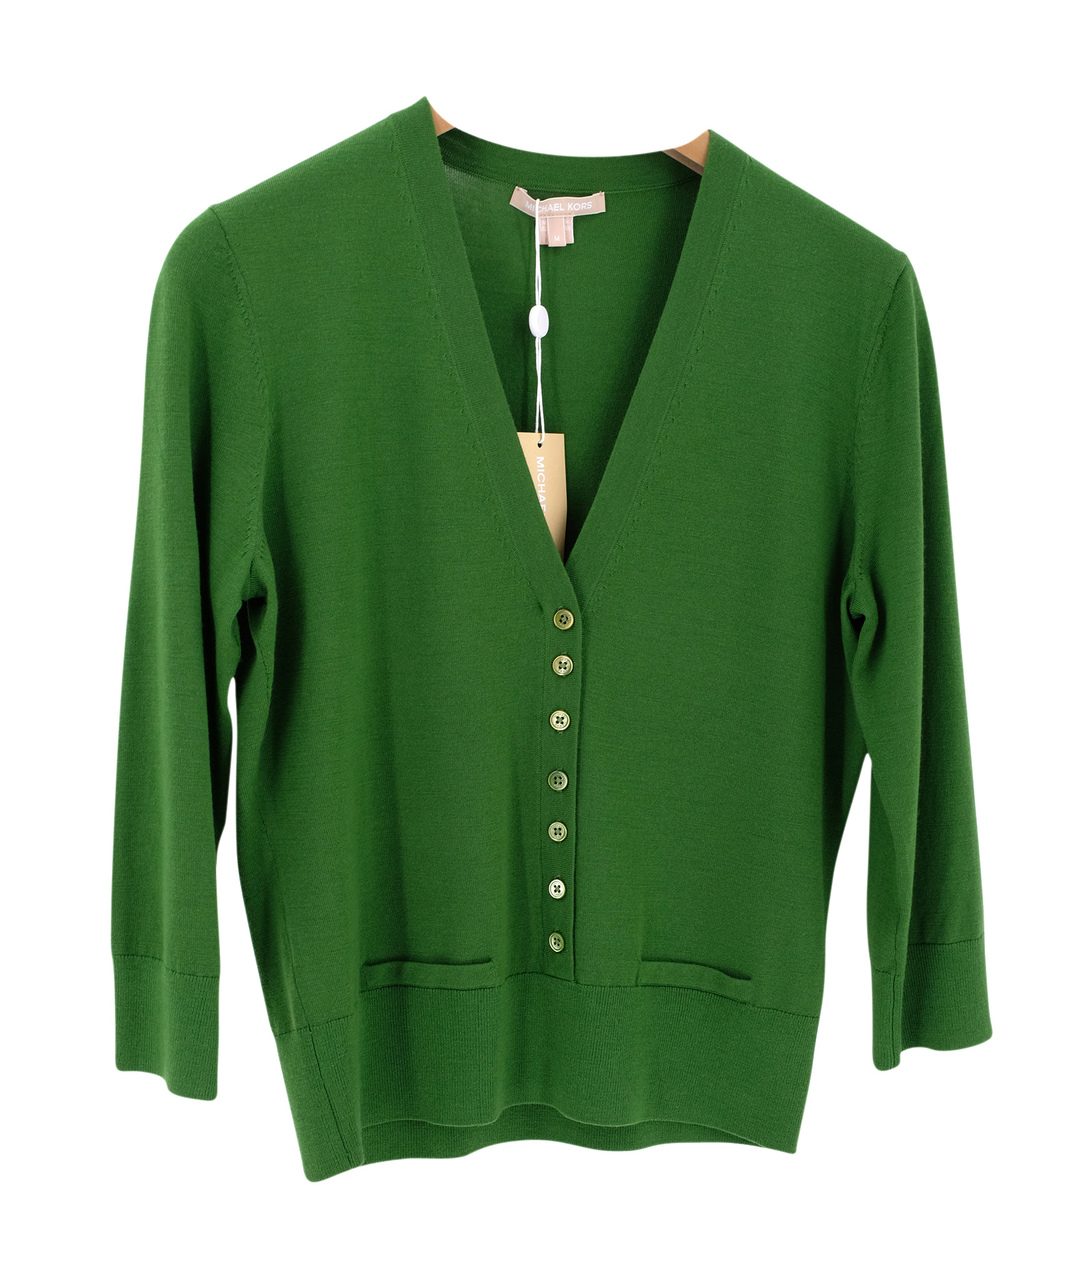 MICHAEL KORS Зеленый шерстяной джемпер / свитер, фото 1